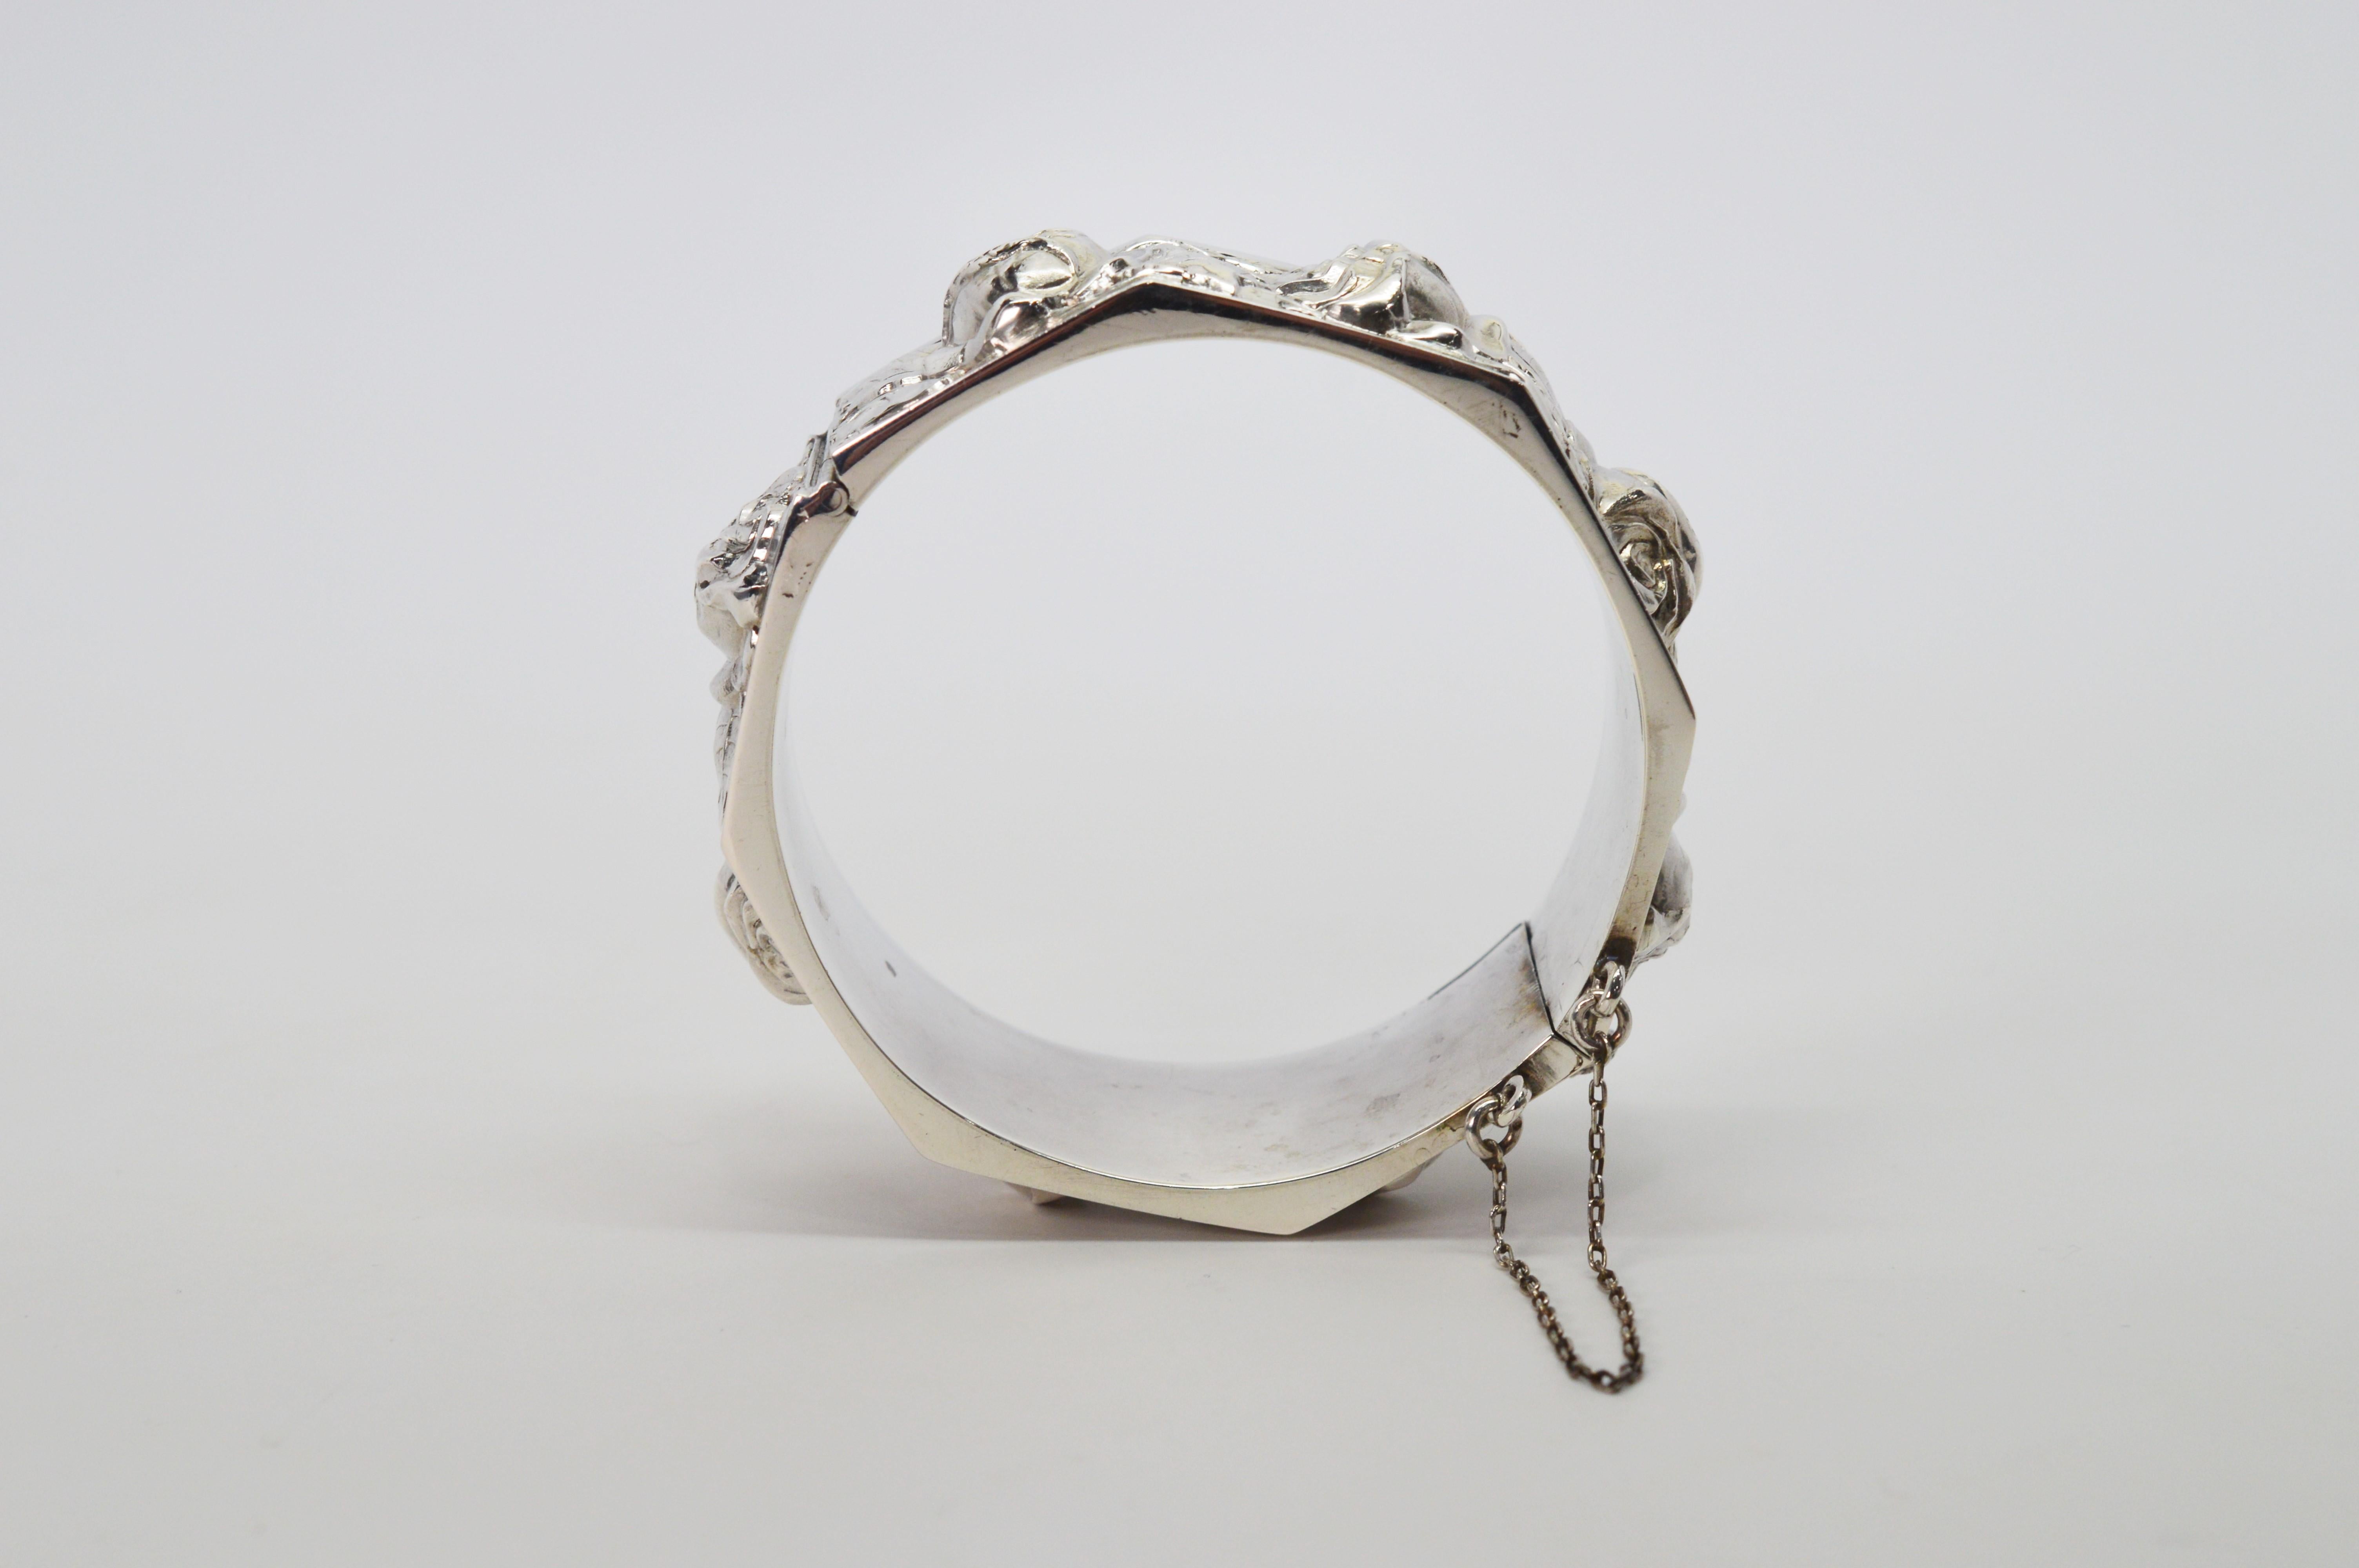 Antique Floral Silver Bangle Bracelet For Sale 1